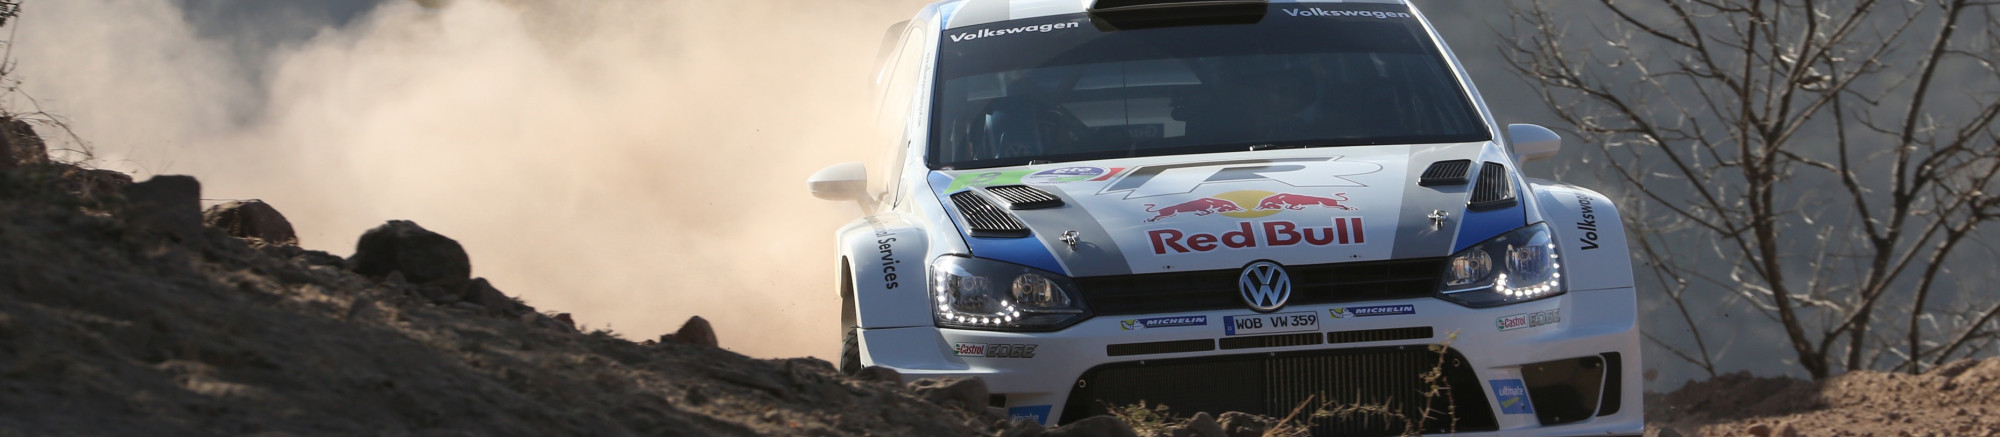 WRC 2014 Mexico